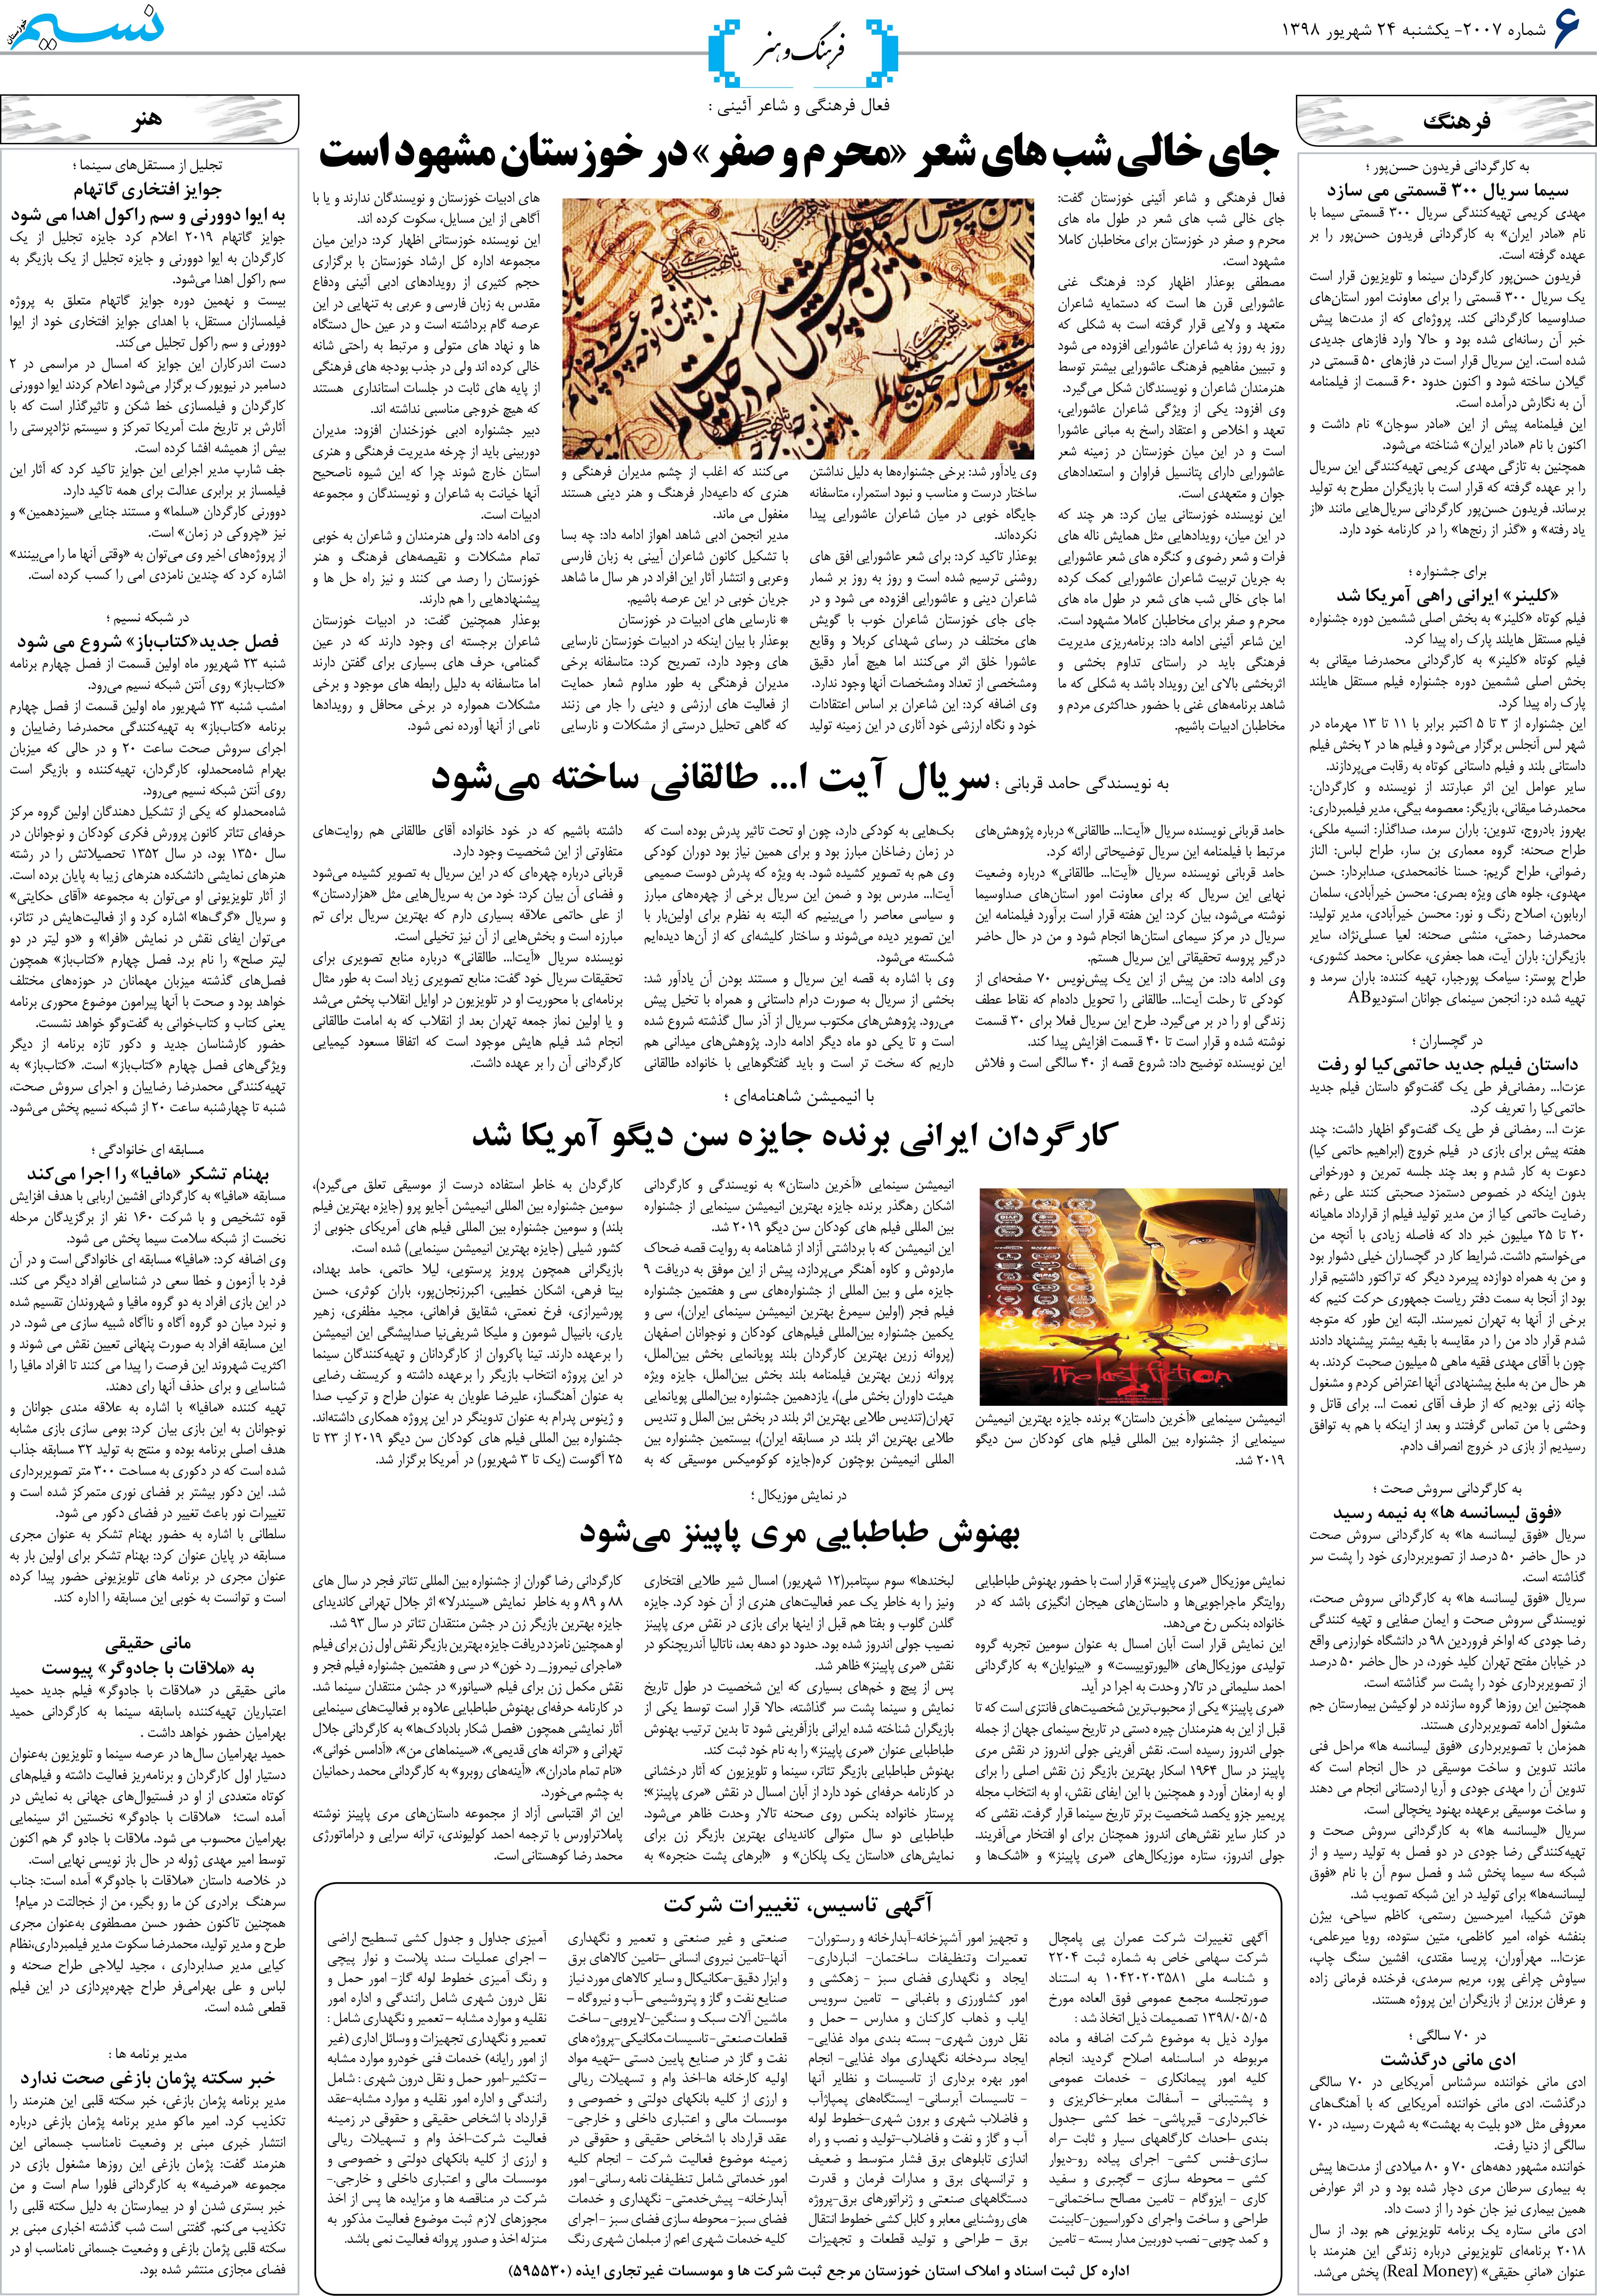 صفحه فرهنگ و هنر روزنامه نسیم شماره 2007